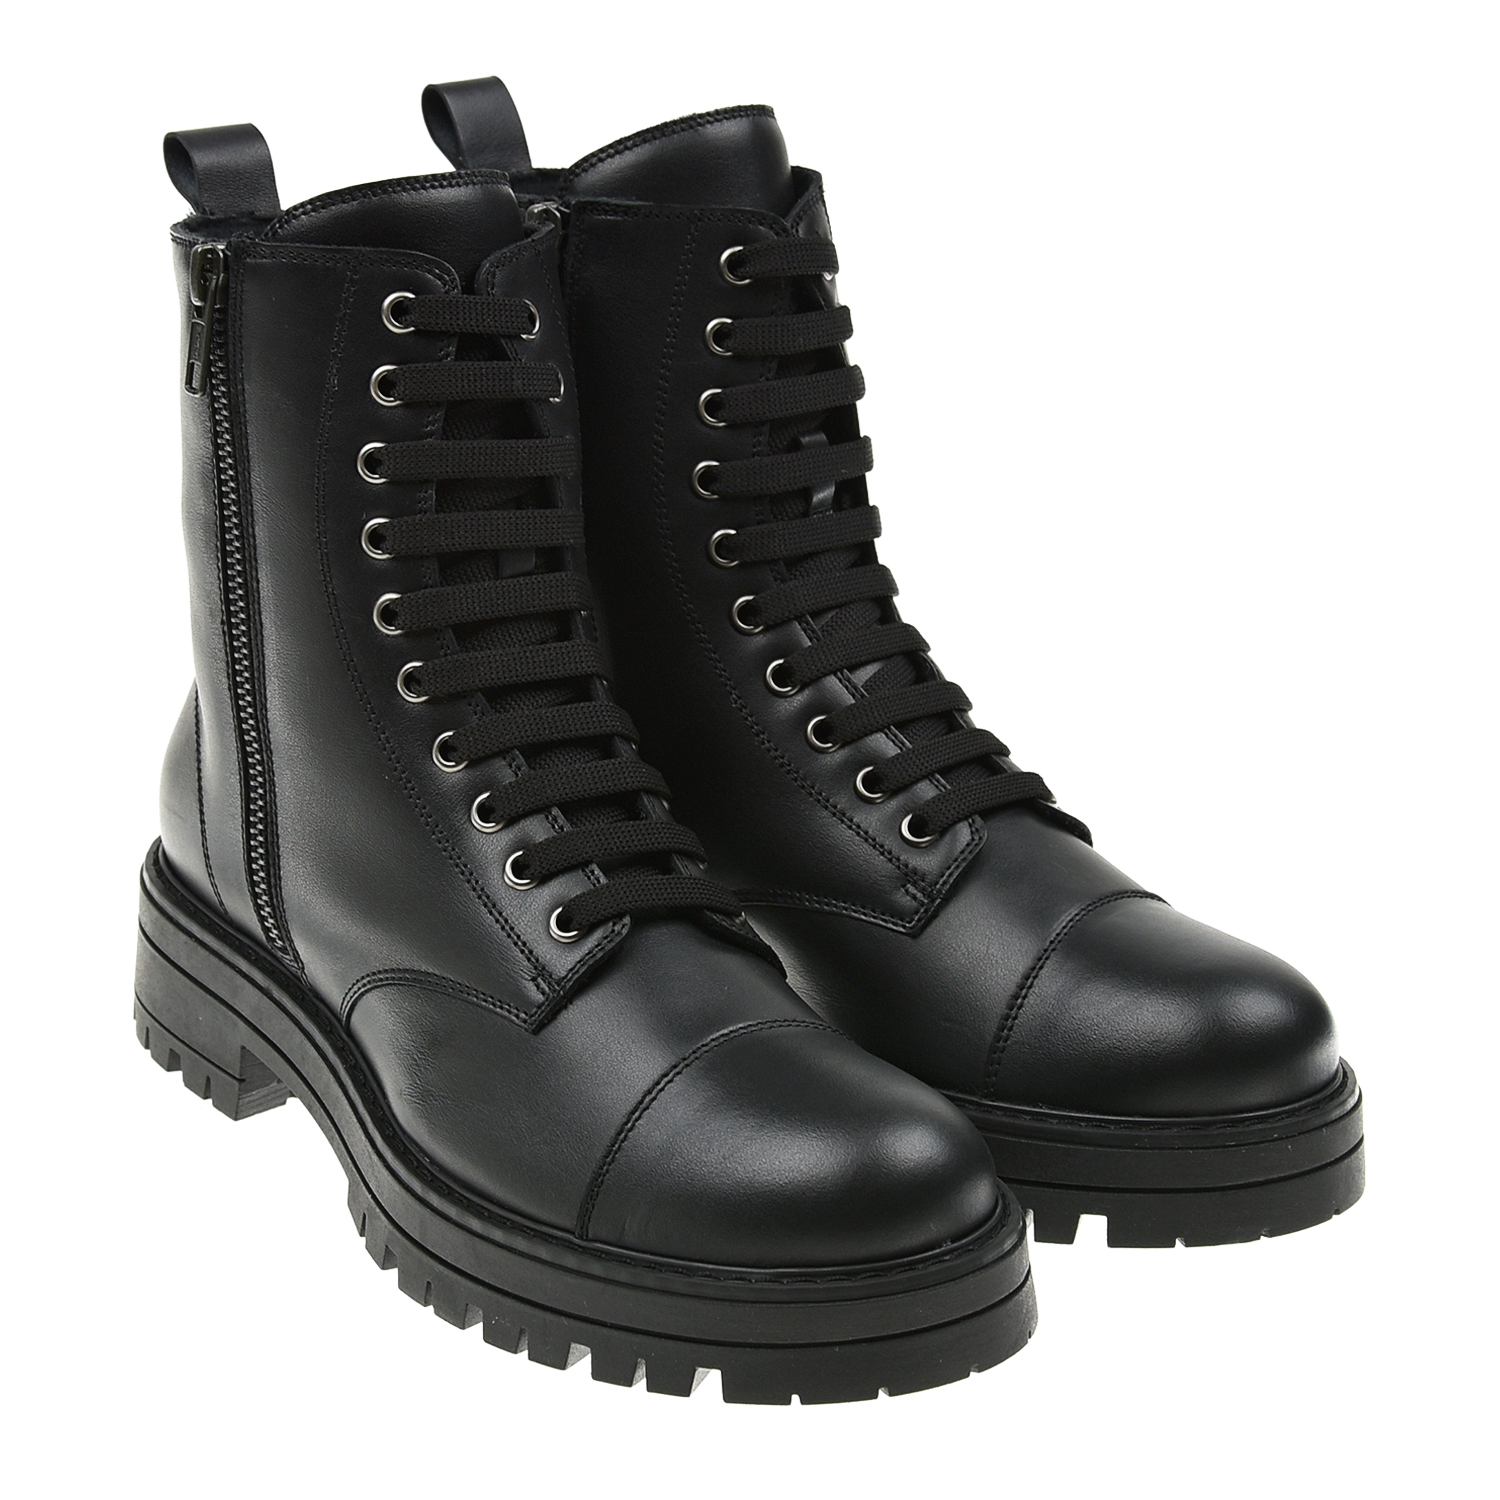 Высокие ботинки с подкладкой из флиса Missouri детские, размер 35, цвет черный